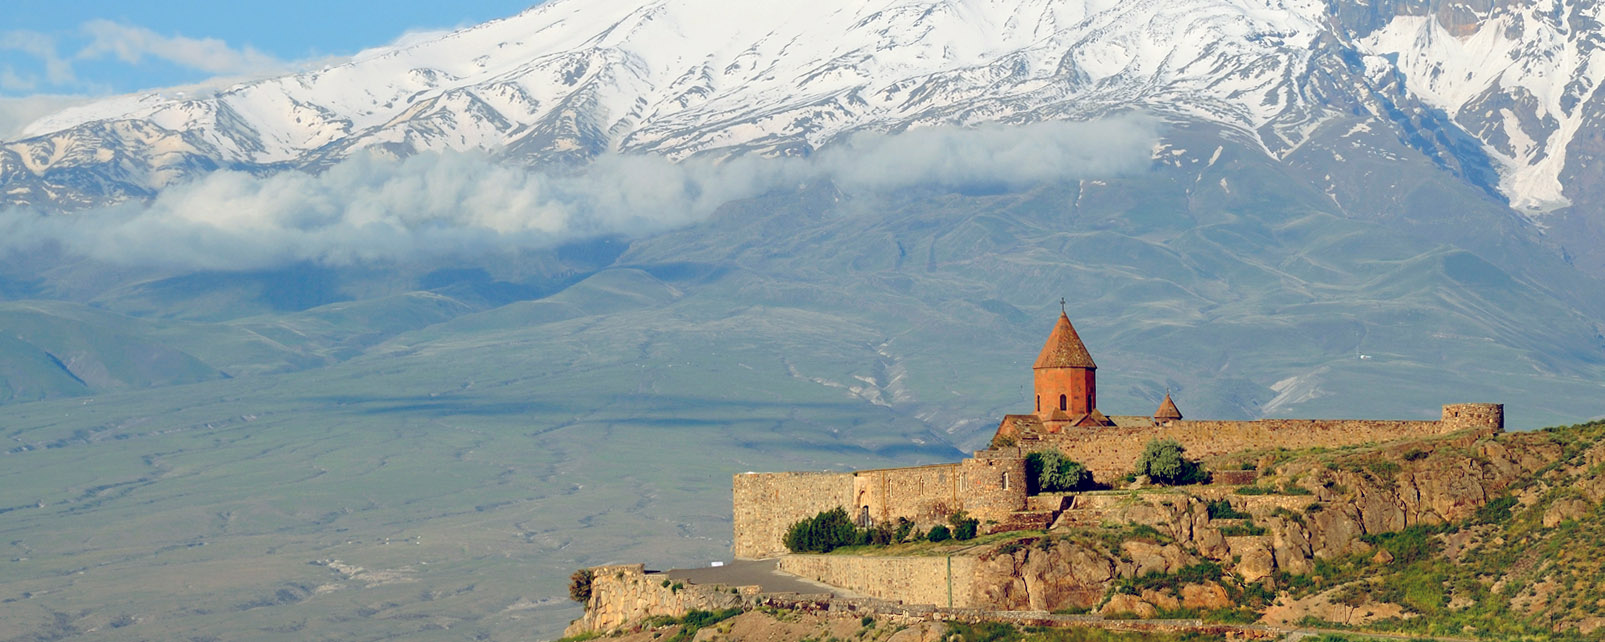 Armenien, das Land meiner Herkunft